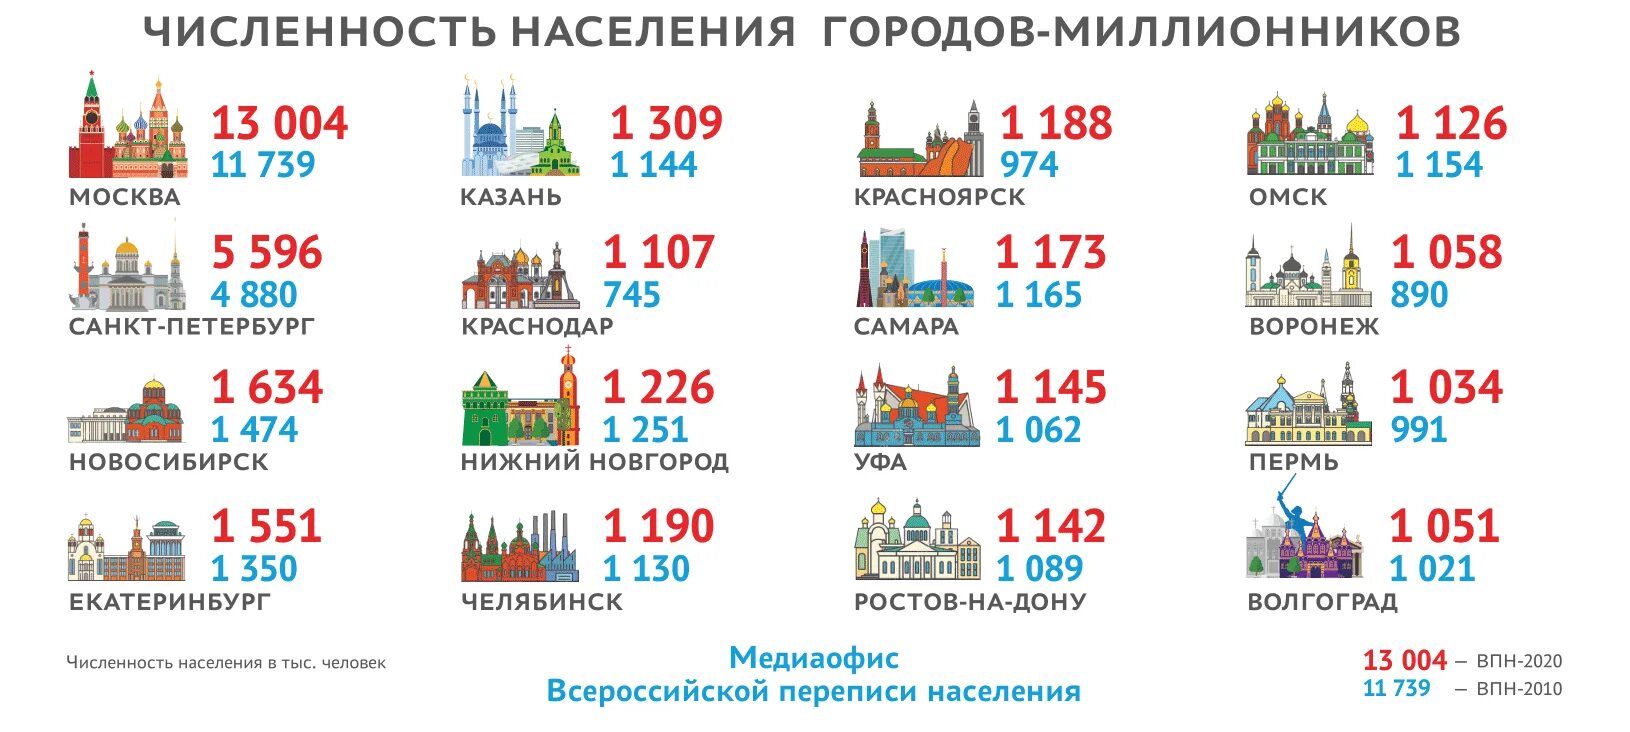 Крупнейшие города в 2022 году. Предварительные итоги переписи населения 2021. Перепись населения 2021 в России. Численность населения России по переписи 2021 года. Перепись населения 2021 итоги по городам.